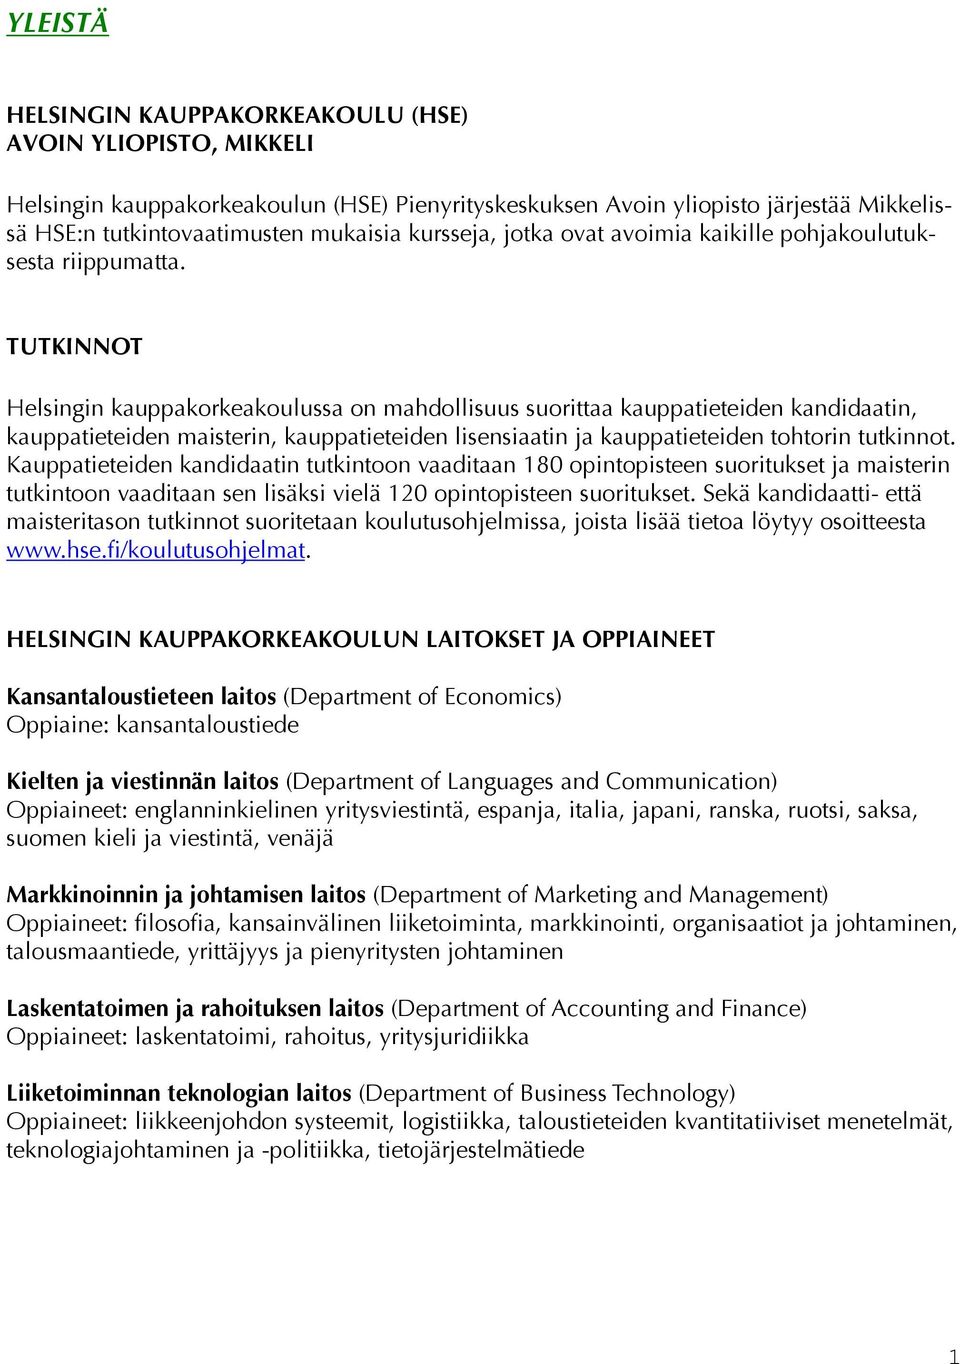 TUTKINNOT Helsingin kauppakorkeakoulussa on mahdollisuus suorittaa kauppatieteiden kandidaatin, kauppatieteiden maisterin, kauppatieteiden lisensiaatin ja kauppatieteiden tohtorin tutkinnot.